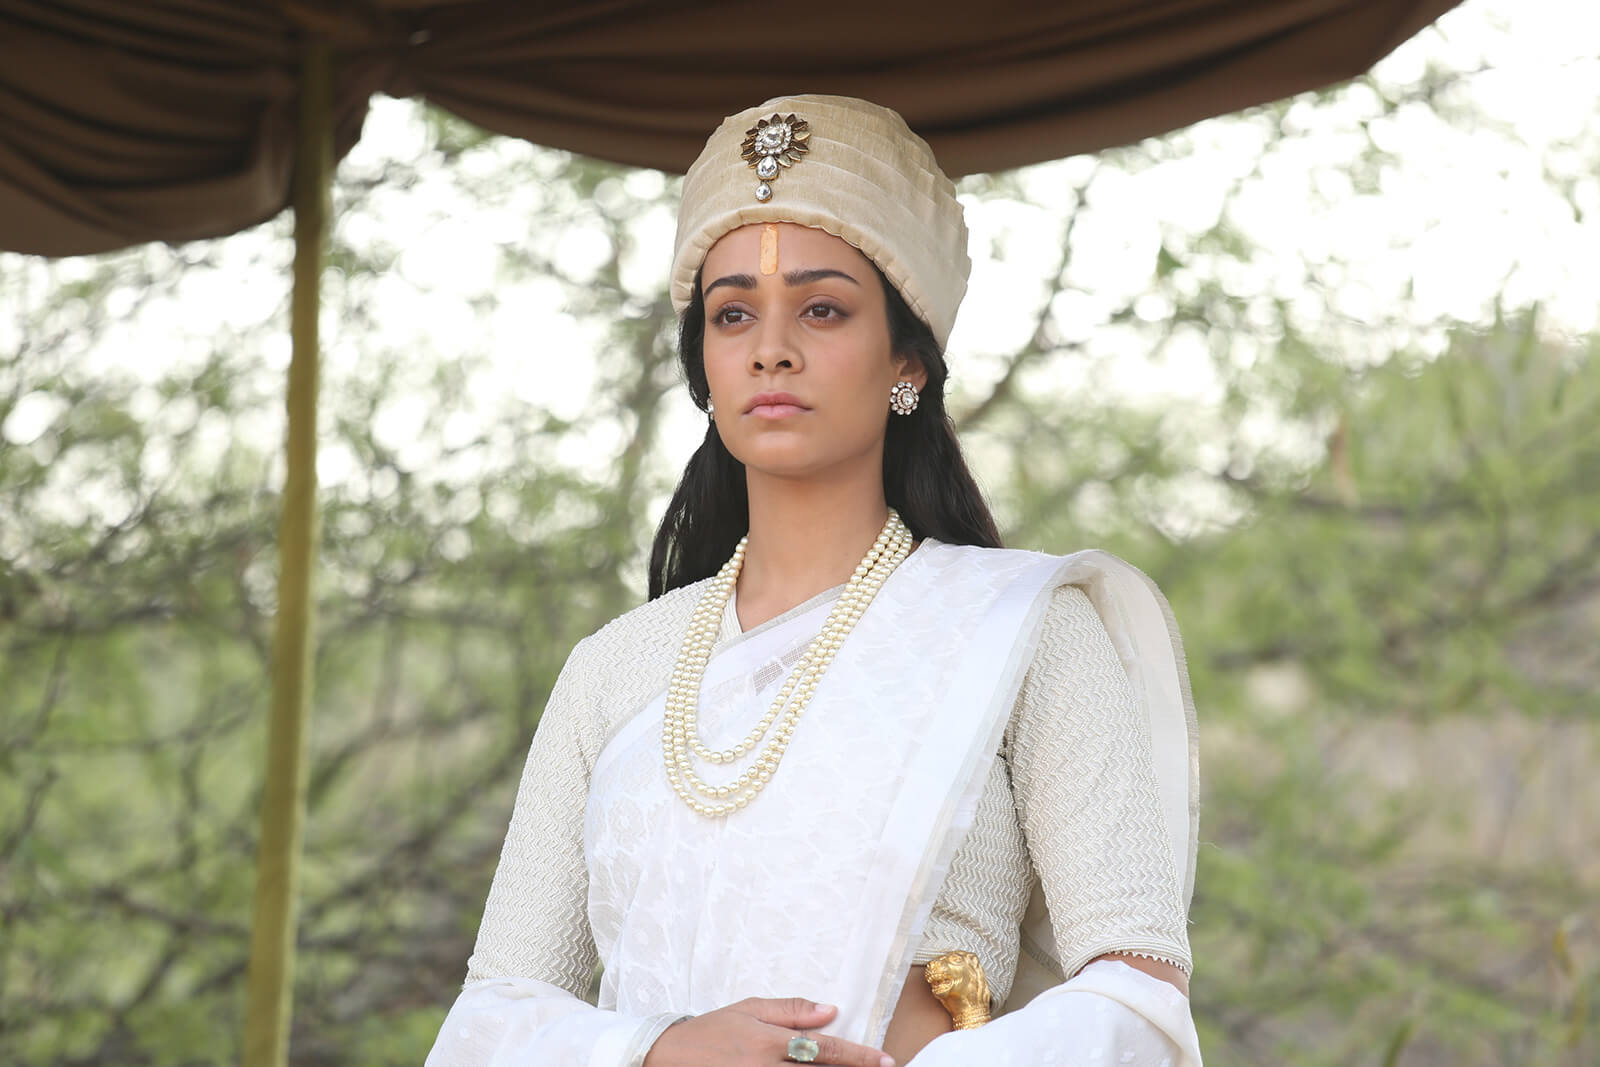 The Warrior Queen of Jhansi 